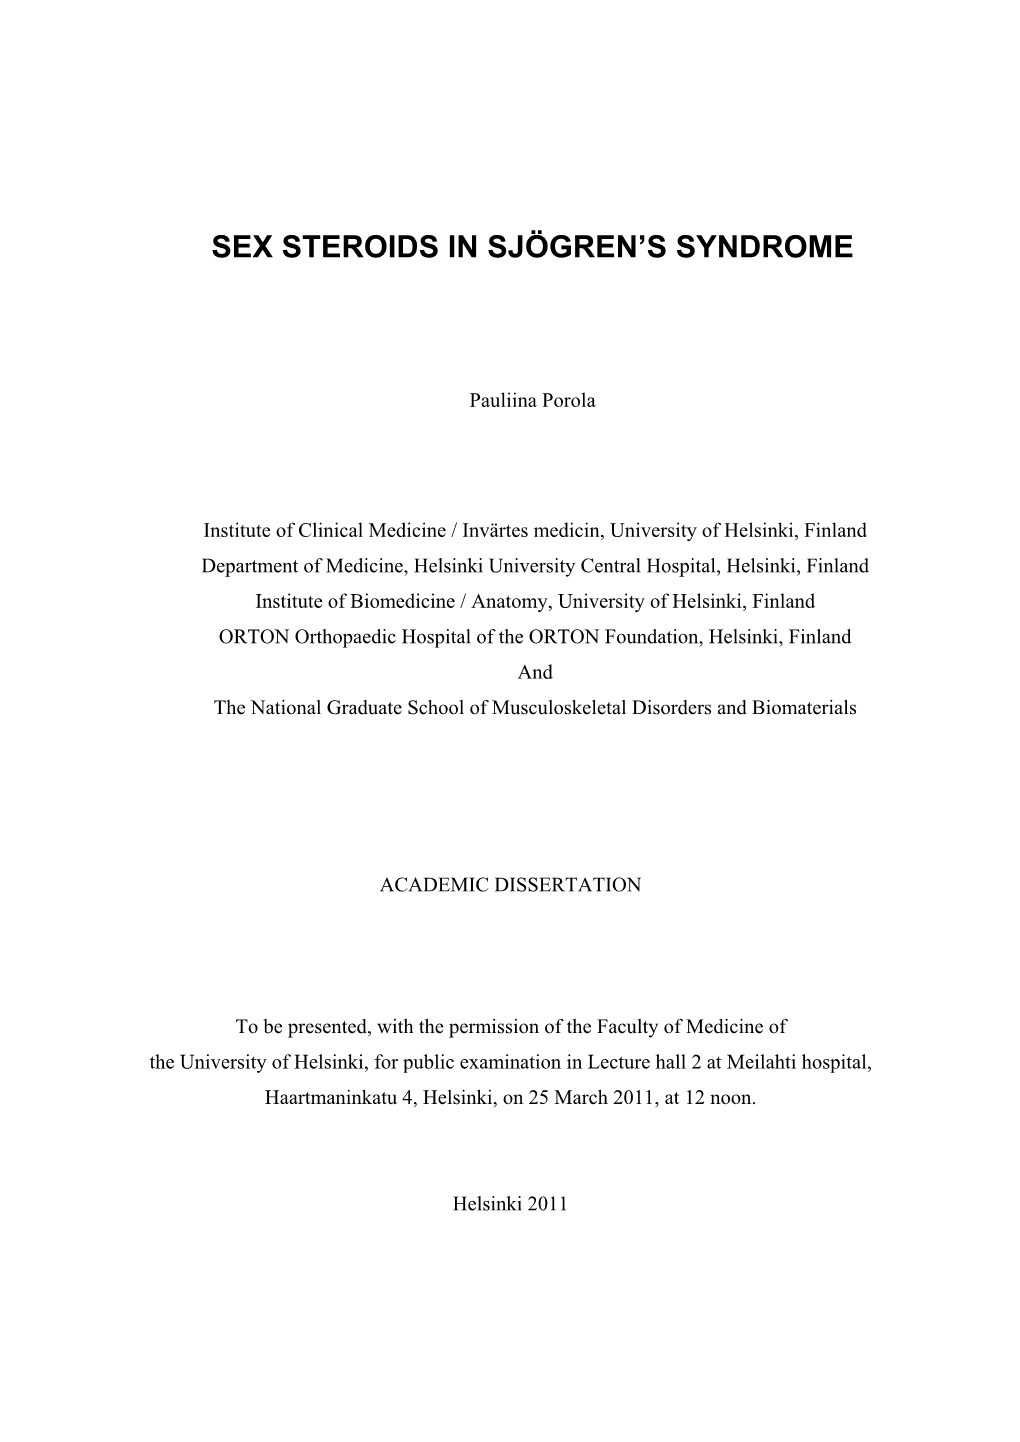 Sex Steroids in Sjögren's Syndrome